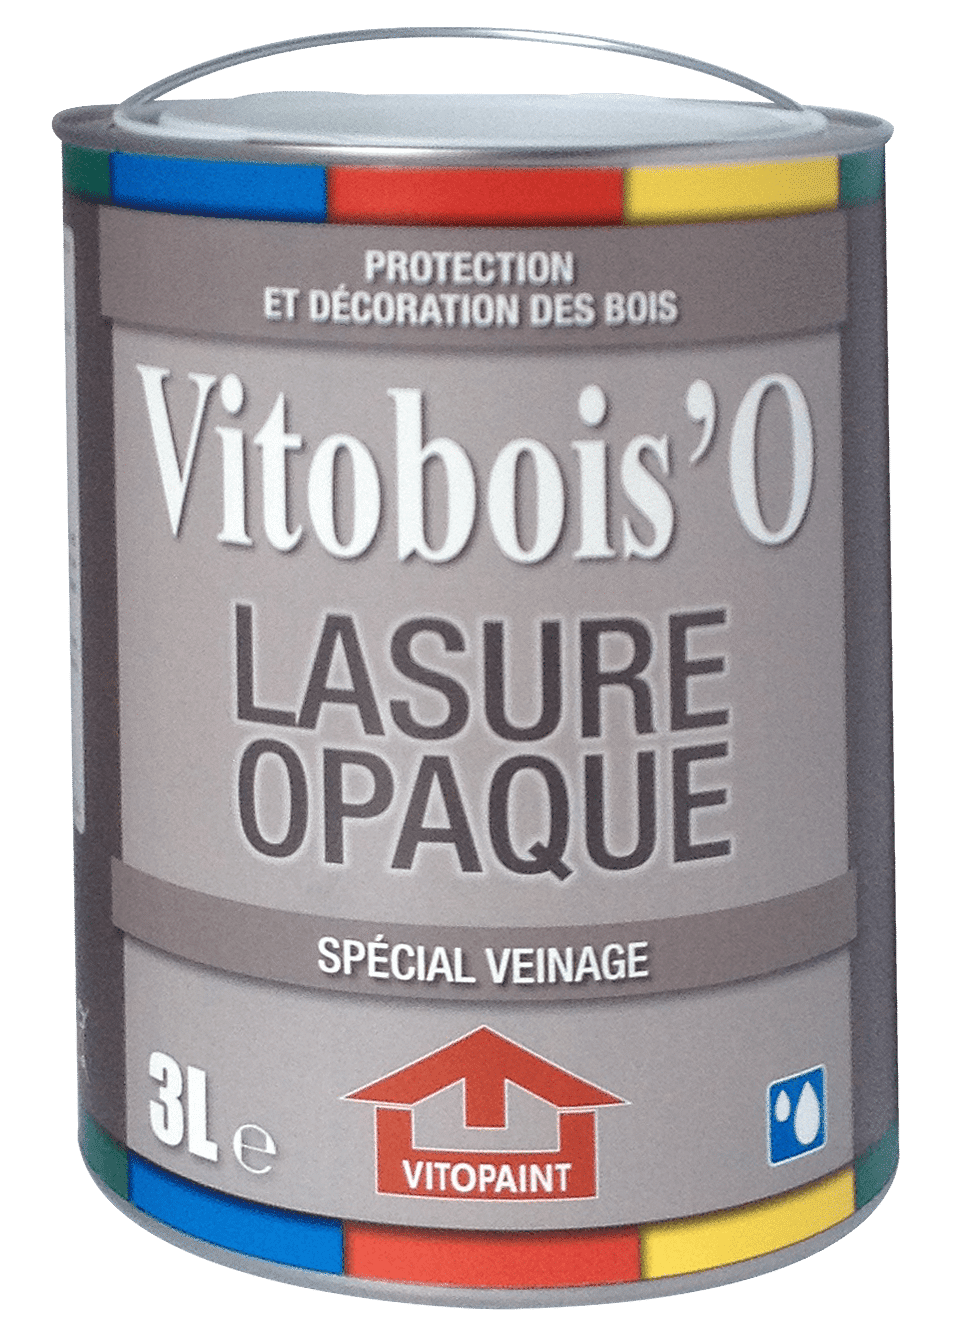 Vitobois’O Lasure Opaque – Spécial Veinage